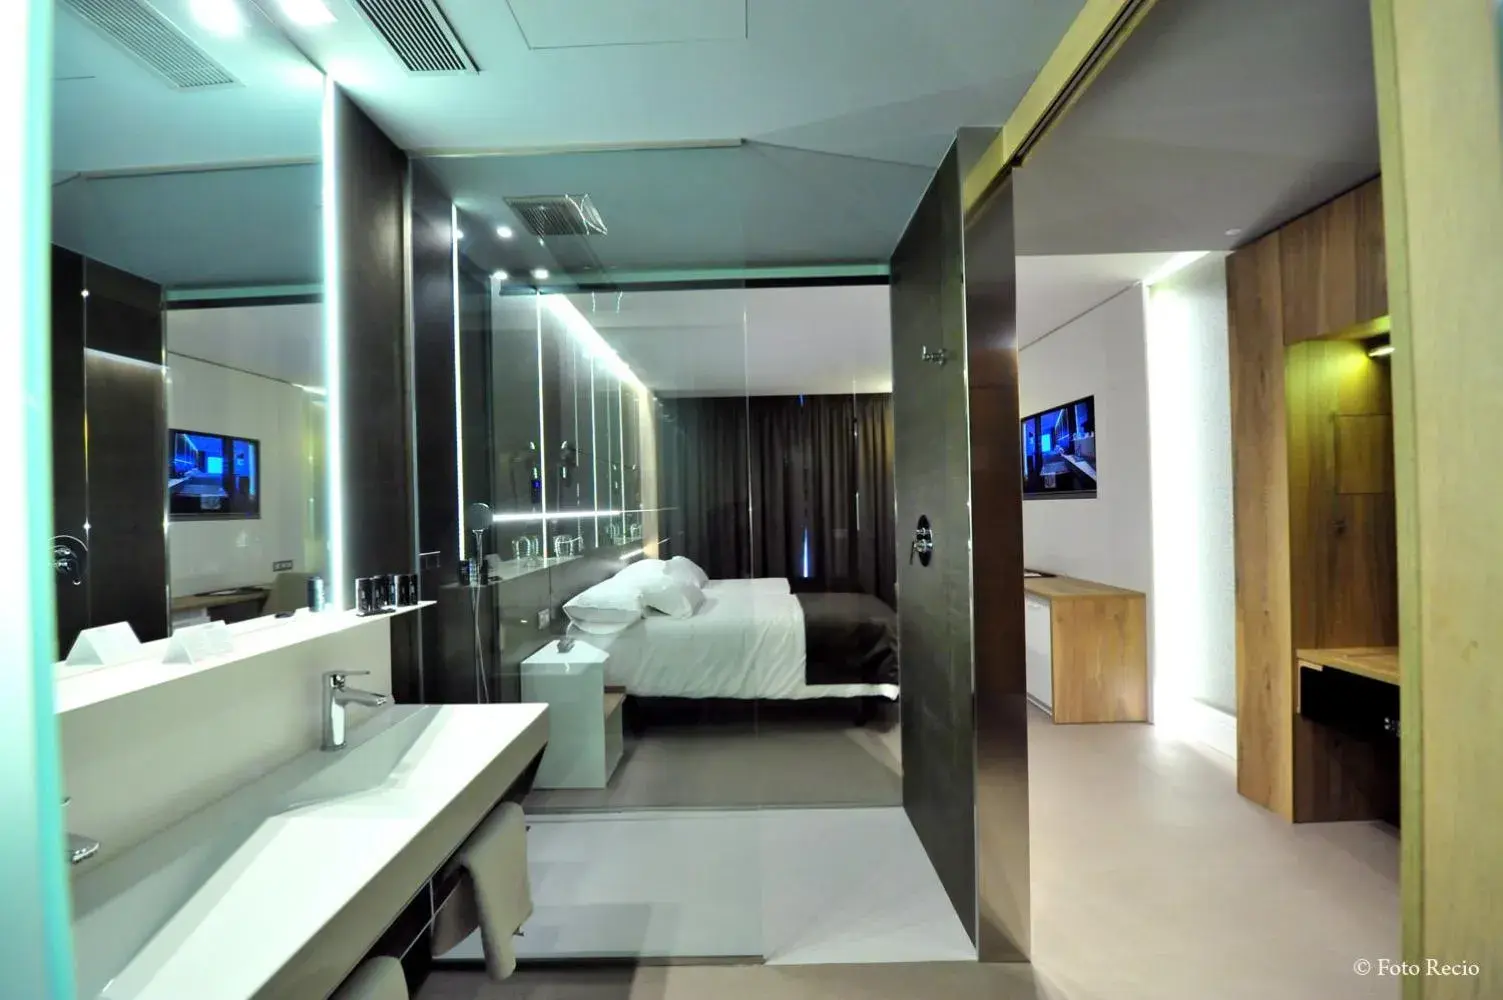 Shower, Bathroom in Hotel & Spa Ciudad de Bin¿r